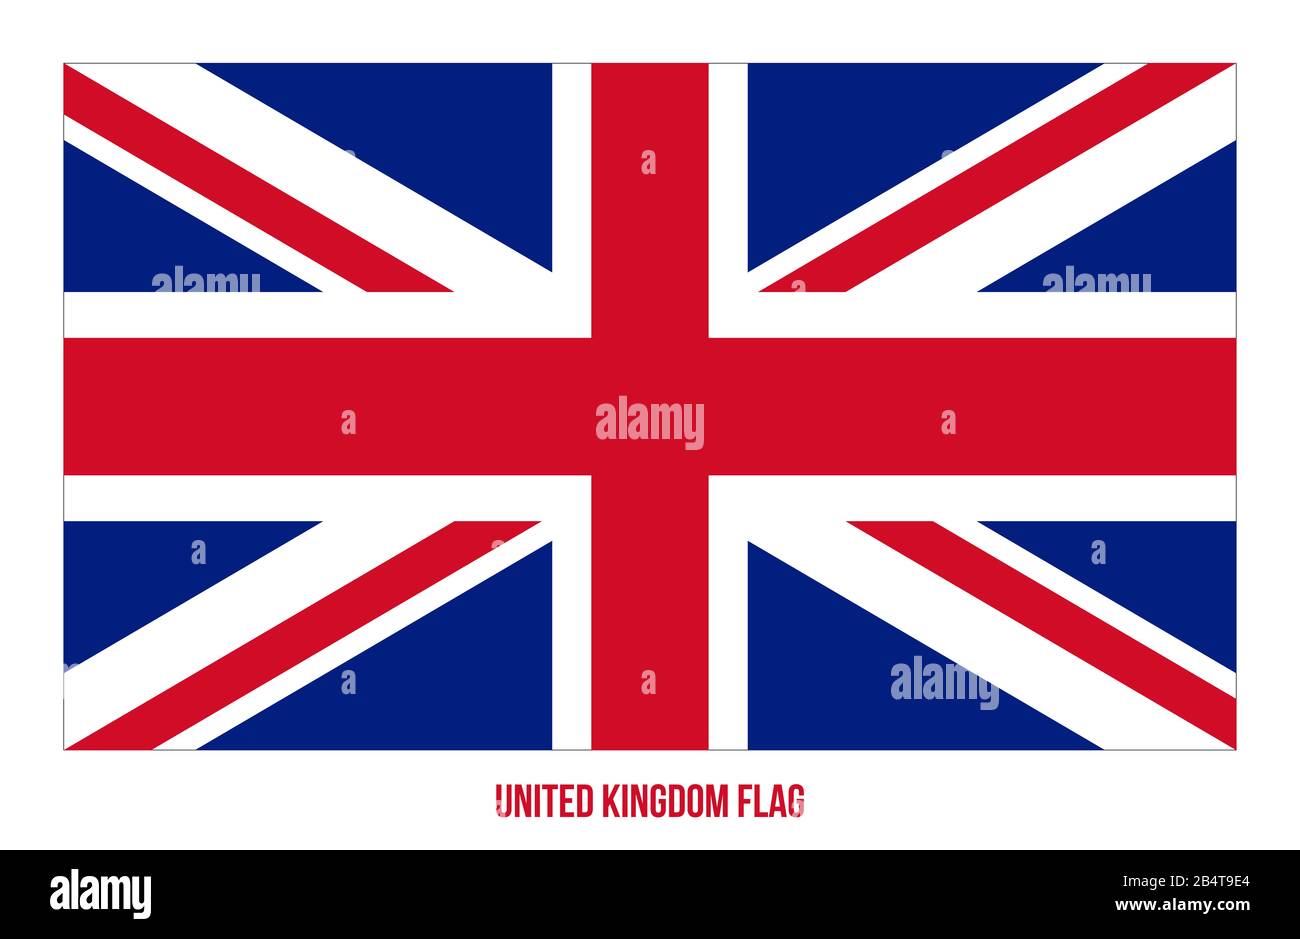 United Kingdom Flag Vector Illustration on White Background. United Kingdom National Flag. Stock Photo